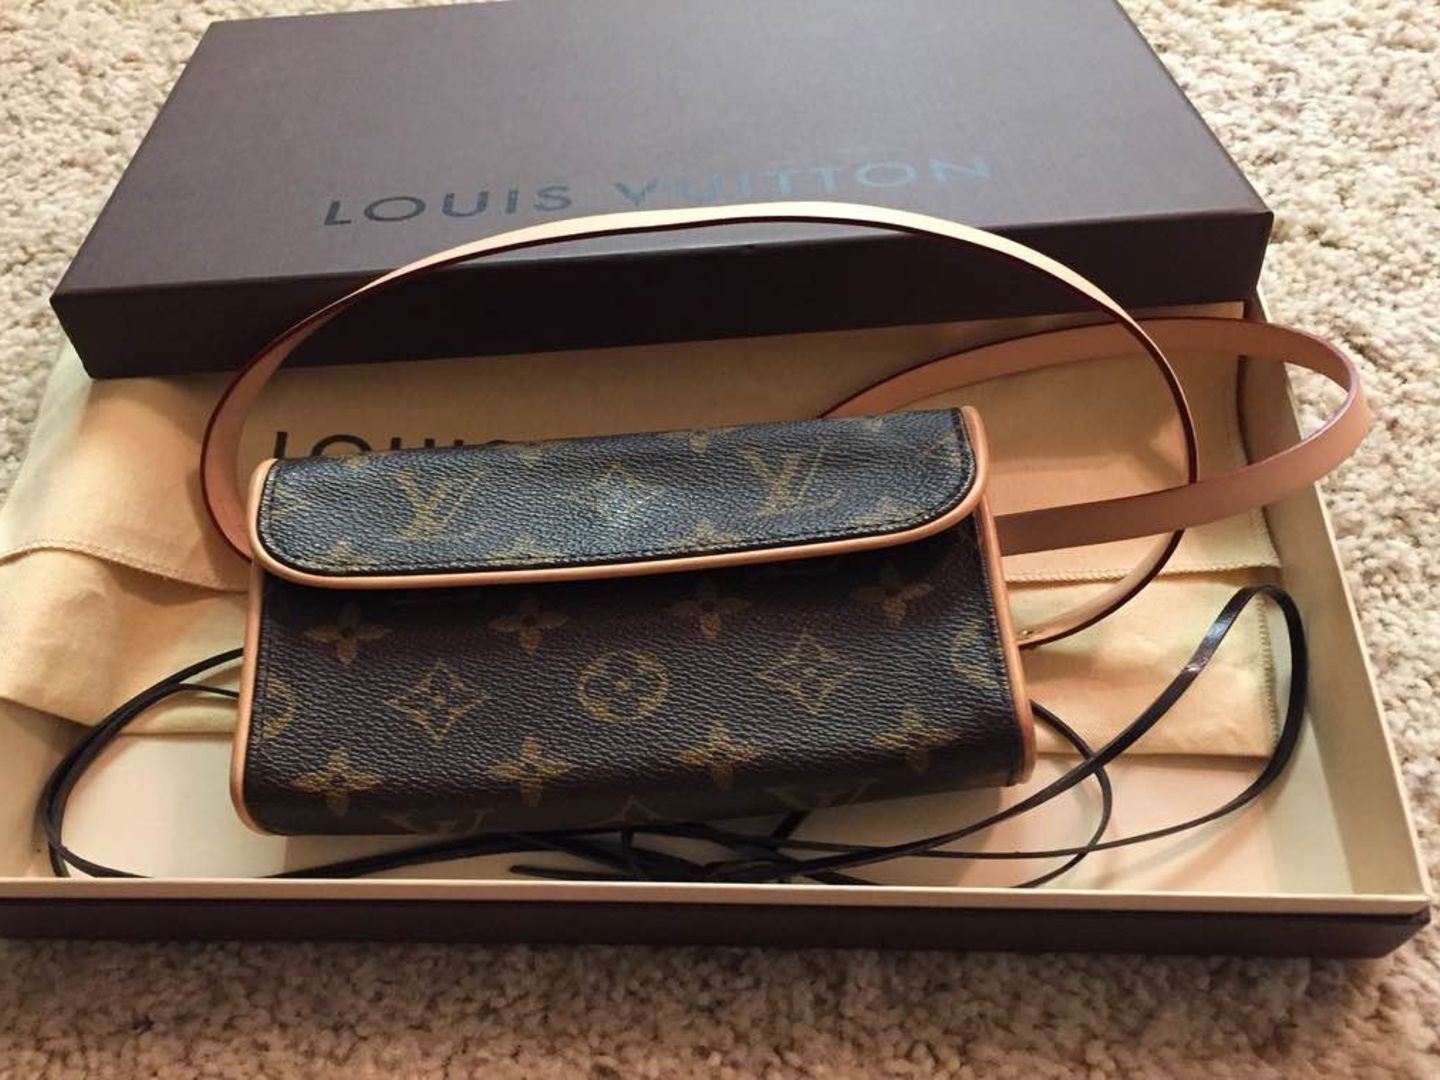 Wie kannst du dir so viele Louis Vuitton Taschen leisten???????? 